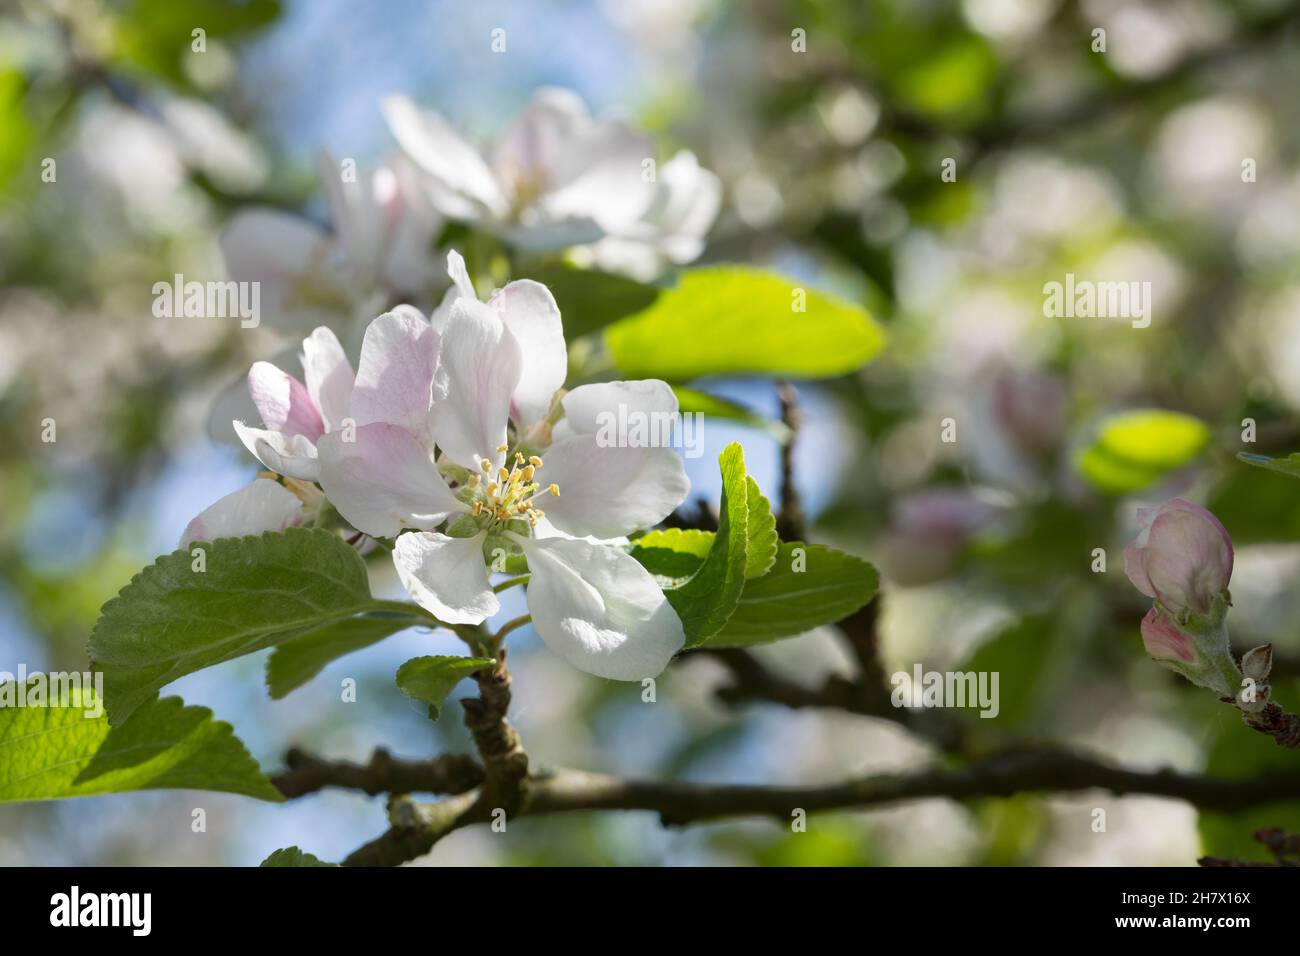 Apfel, Apfelbaum, Apfel-Baum, Apfelblüte, Kultur-Apfel, Malus domestica, Apple, Le pommier domestique, pommier commun, Obstbaum Stock Photo